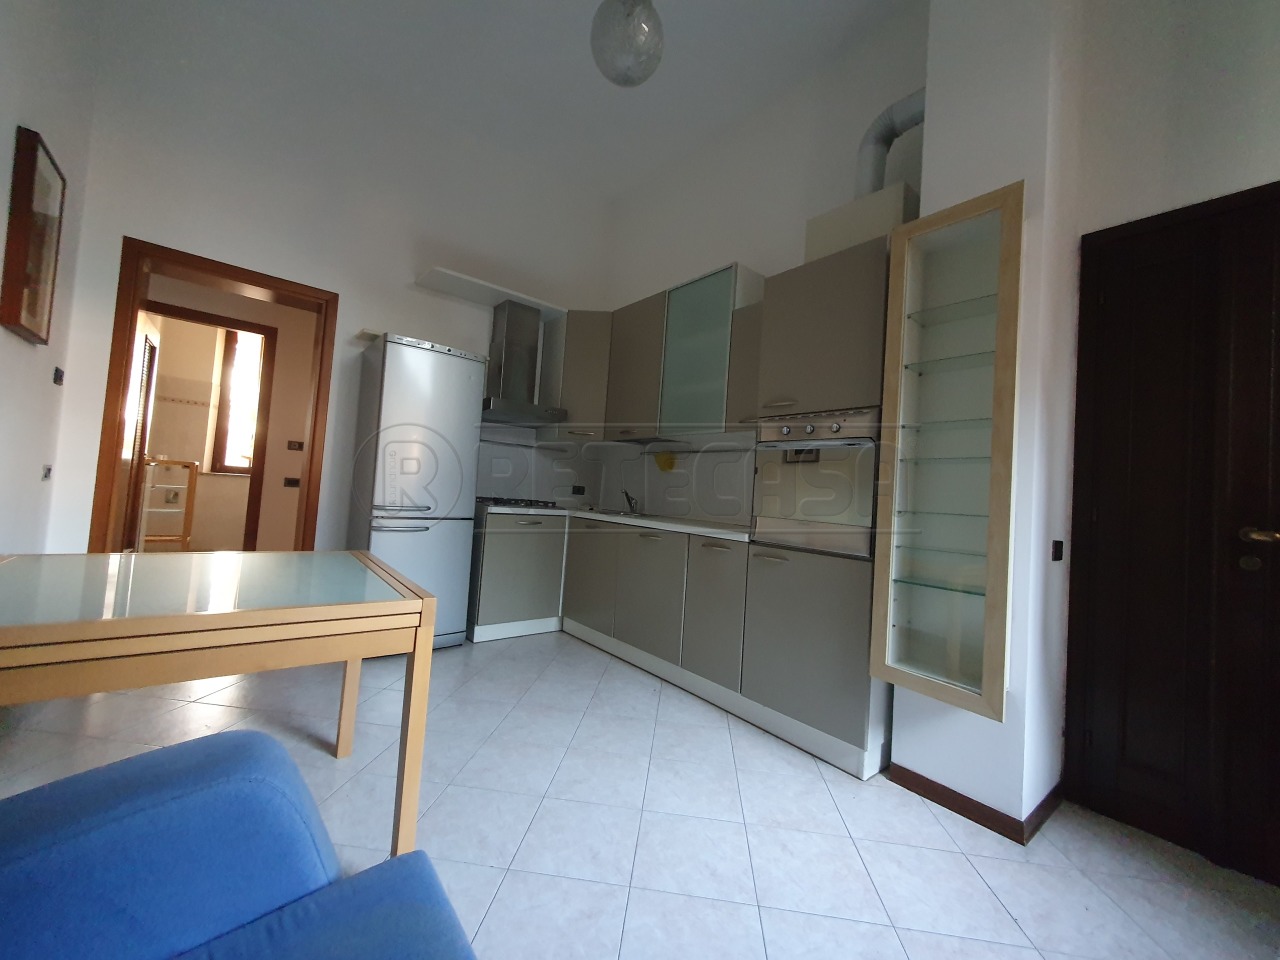 Appartamento in vendita a Cremona, 2 locali, prezzo € 81.900 | PortaleAgenzieImmobiliari.it